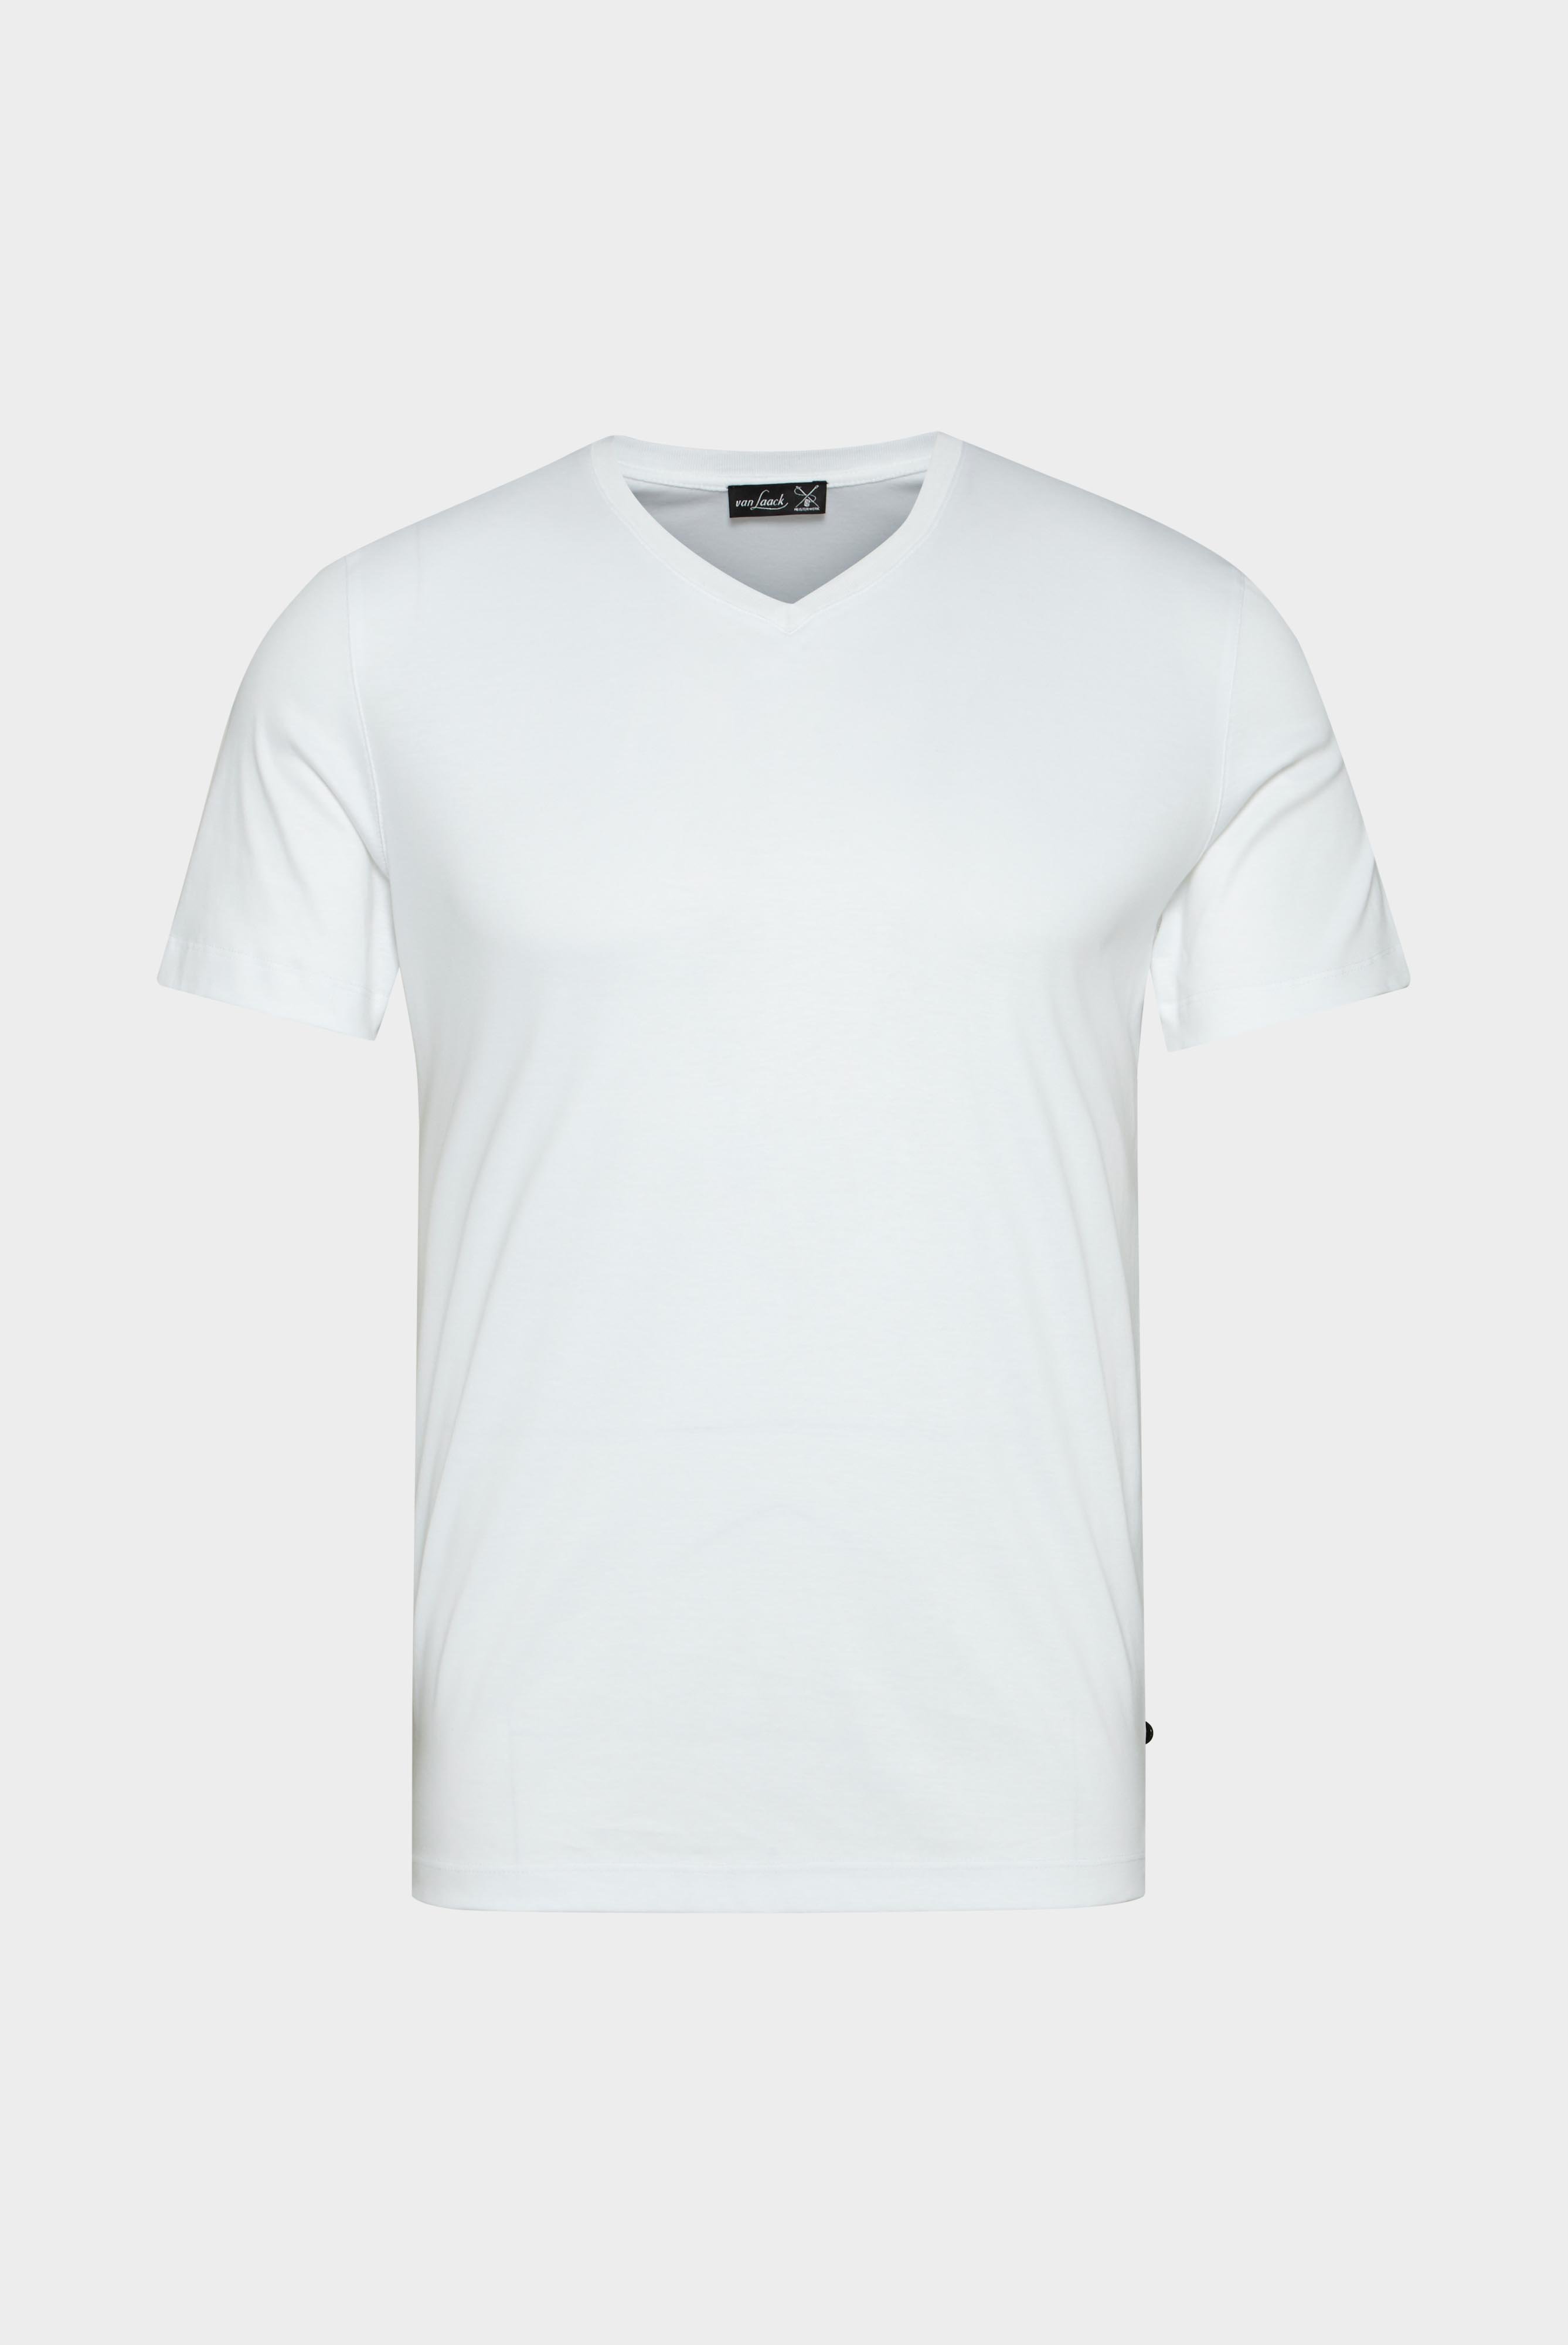 T-Shirts+V-Ausschnitt Jersey T-Shirt Slim Fit+20.1715.UX.180031.000.S